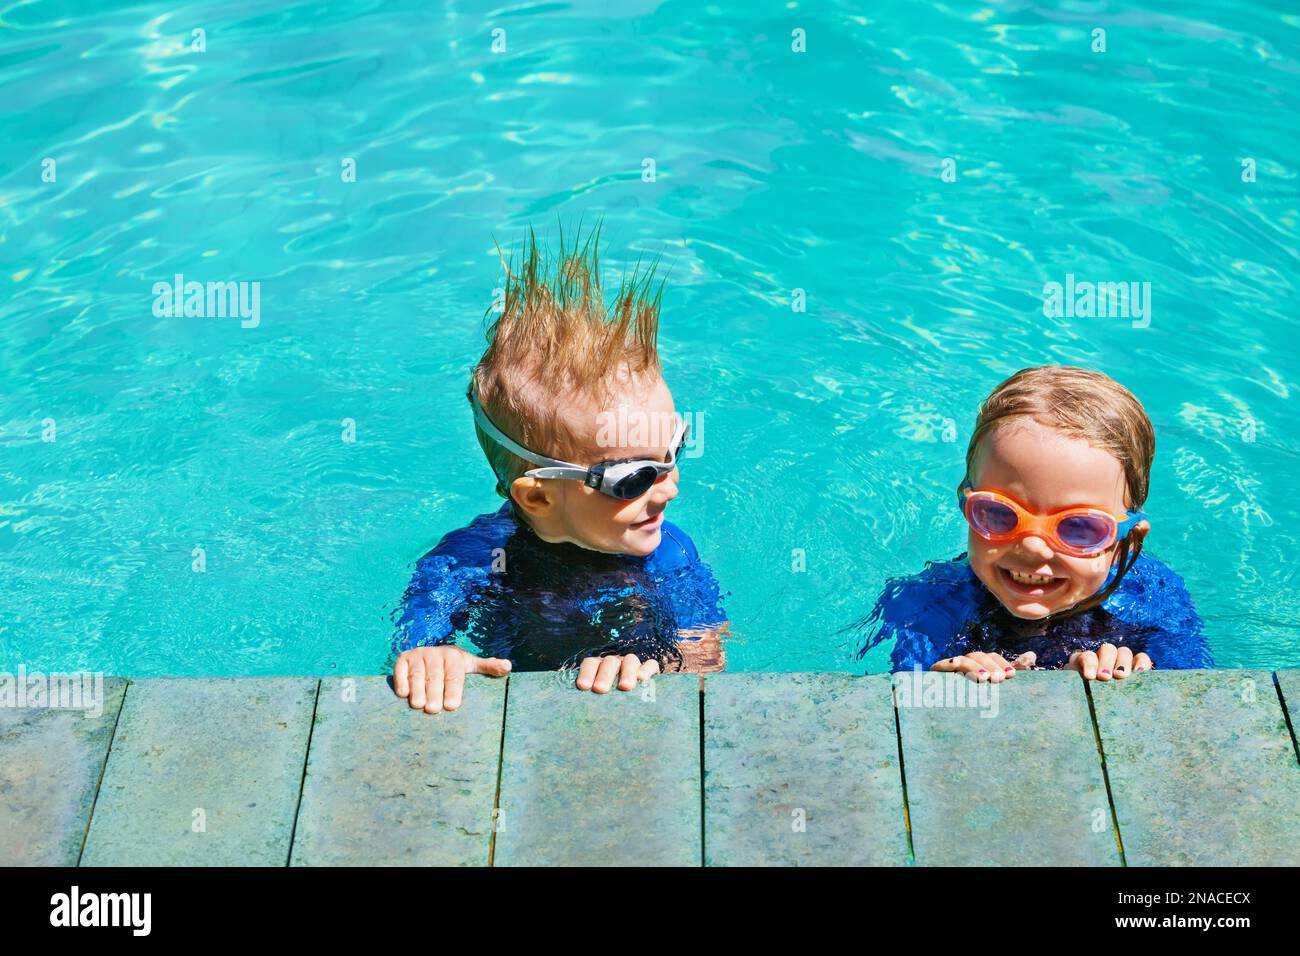 Los niños felices en trajes de neopreno y gafas aprenden a nadar, se  divierten junto a la piscina en el estilo de vida familiar saludable,  actividades deportivas acuáticas para niños pequeños Fotografía